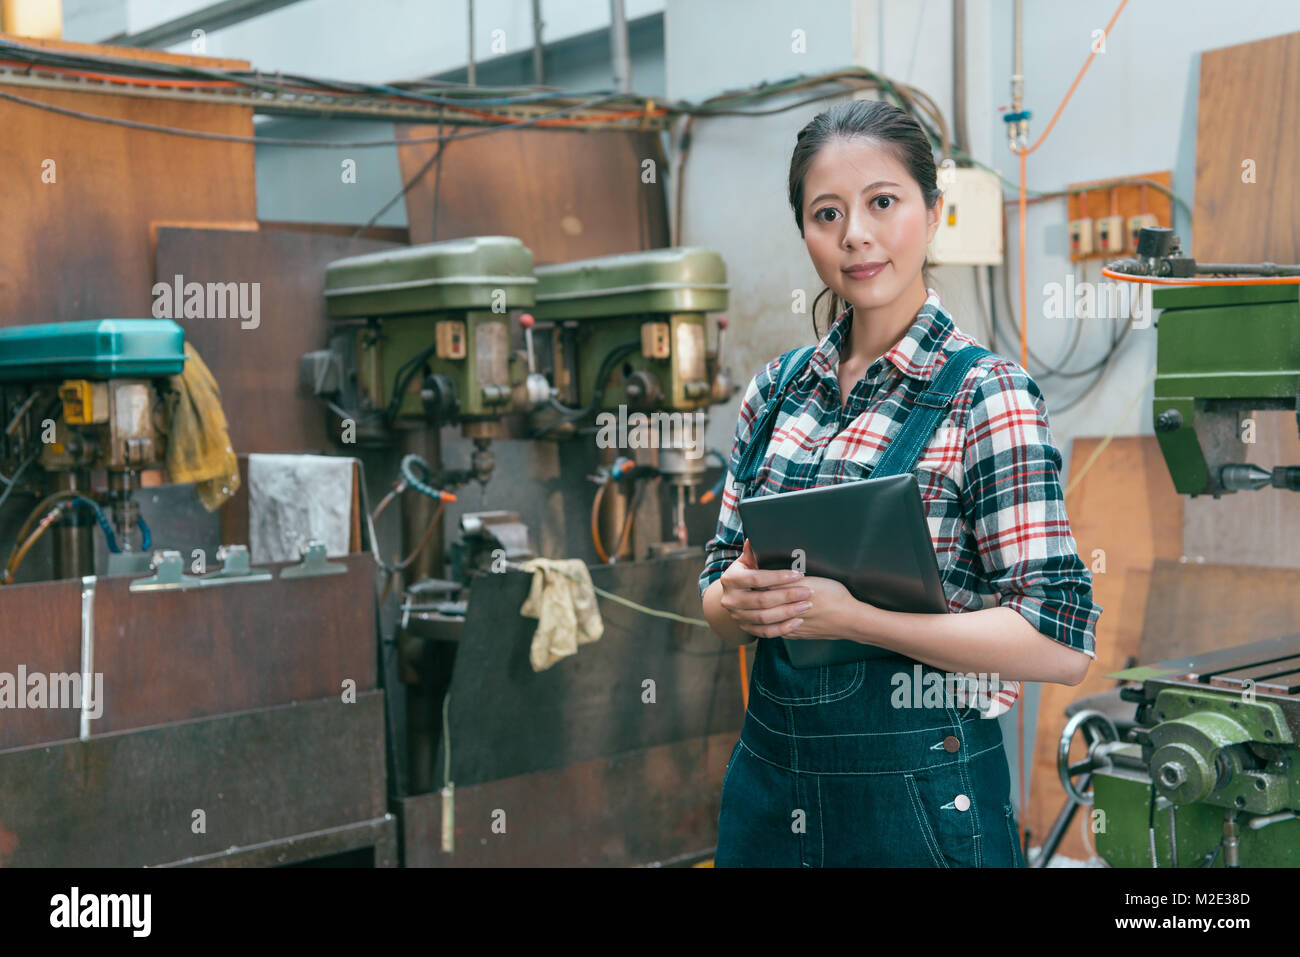 Joli sourire femme chef d'entreprise holding digital tablet mobile face à l'appareil photo lorsque elle debout dans machine-usine. Banque D'Images